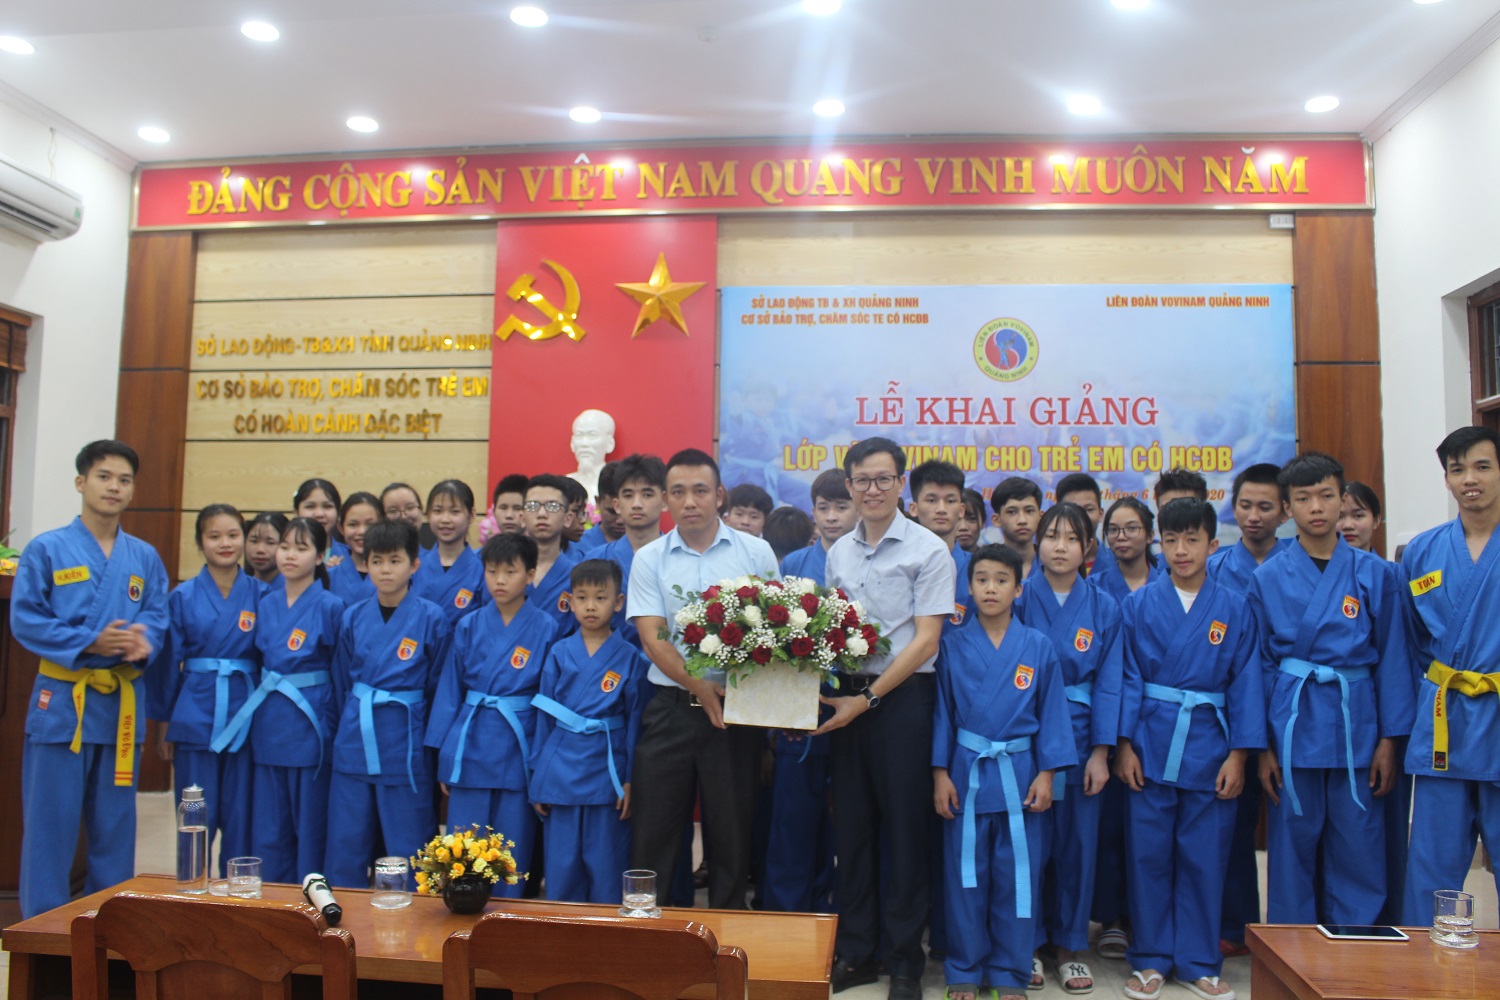 Lớp võ được khai giảng vào đầu tháng 6/2020, do Liên đoàn Vovinam Quảng Ninh và Cơ sở bảo trợ, chăm sóc trẻ em có hoàn cảnh đặc biệt tổ chức. 